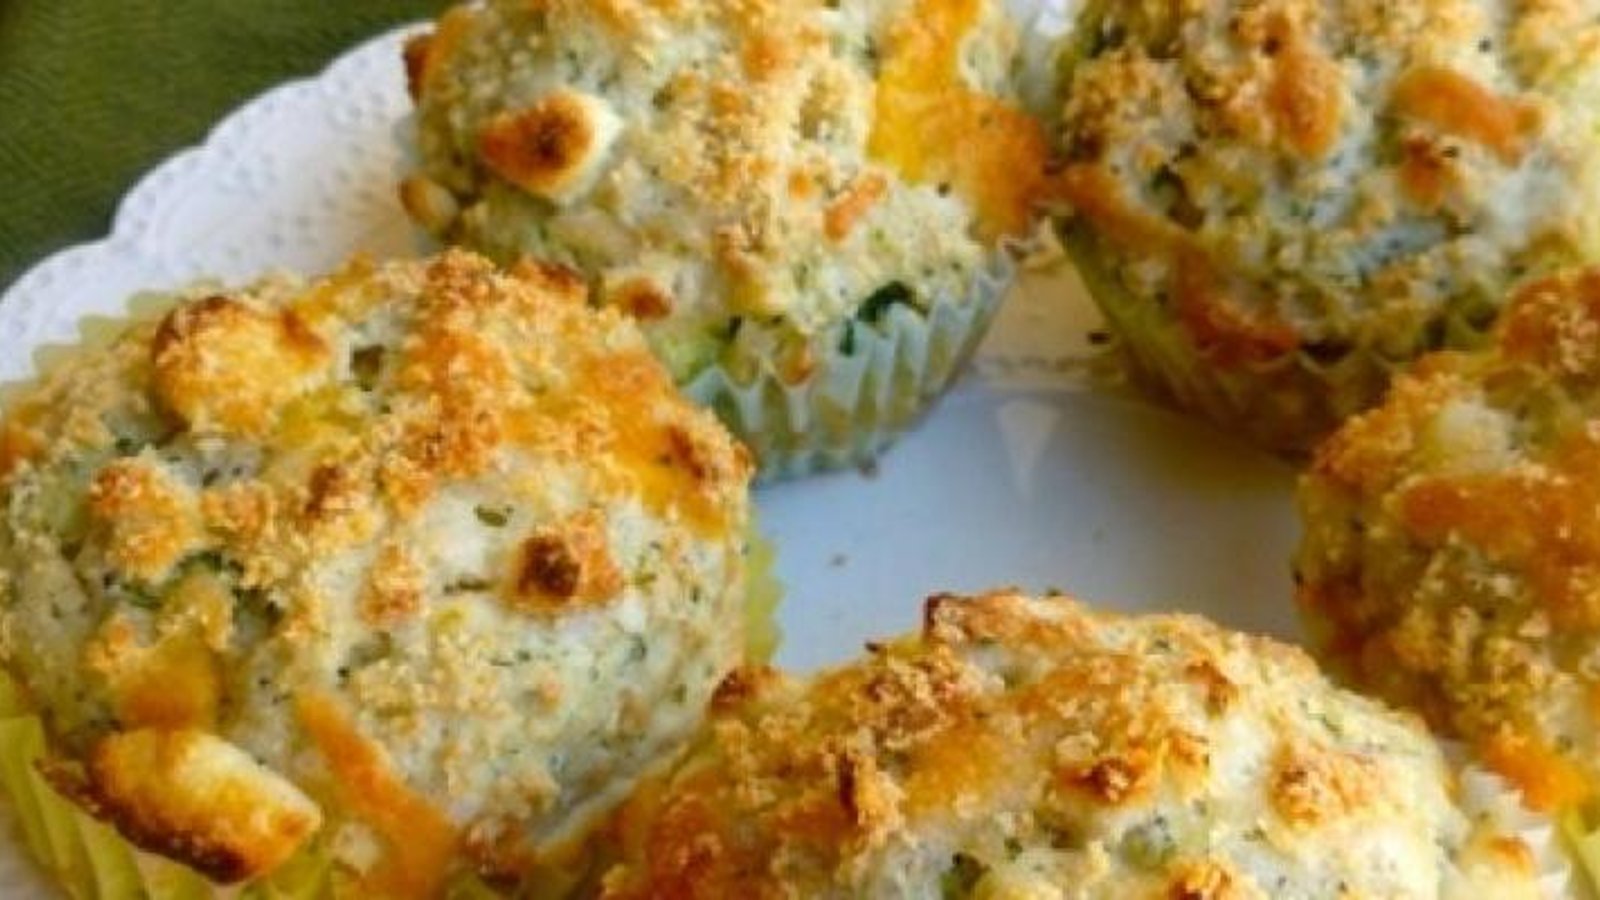 Muffin fromage et brocoli...un excellent déjeuner santé